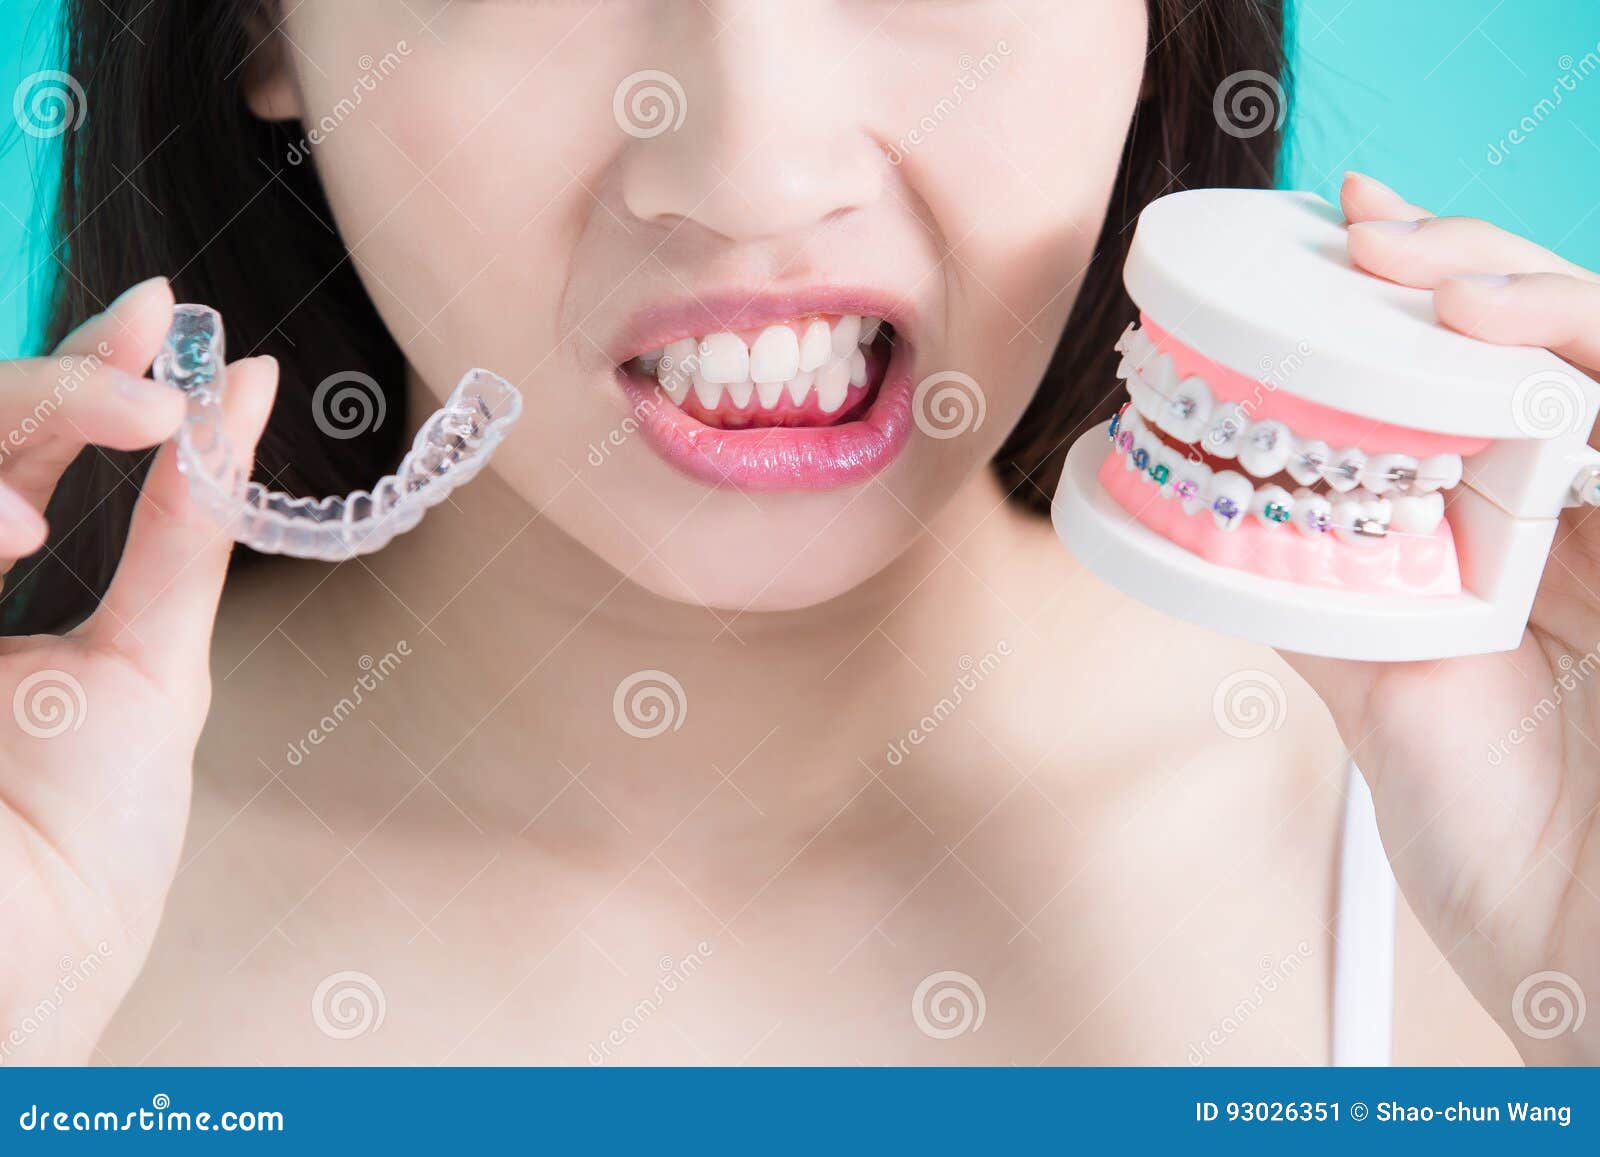 牙齒排列整齊卻暴牙？改善側面輪廓案例-林小姐 - 展心展研林口牙醫診所